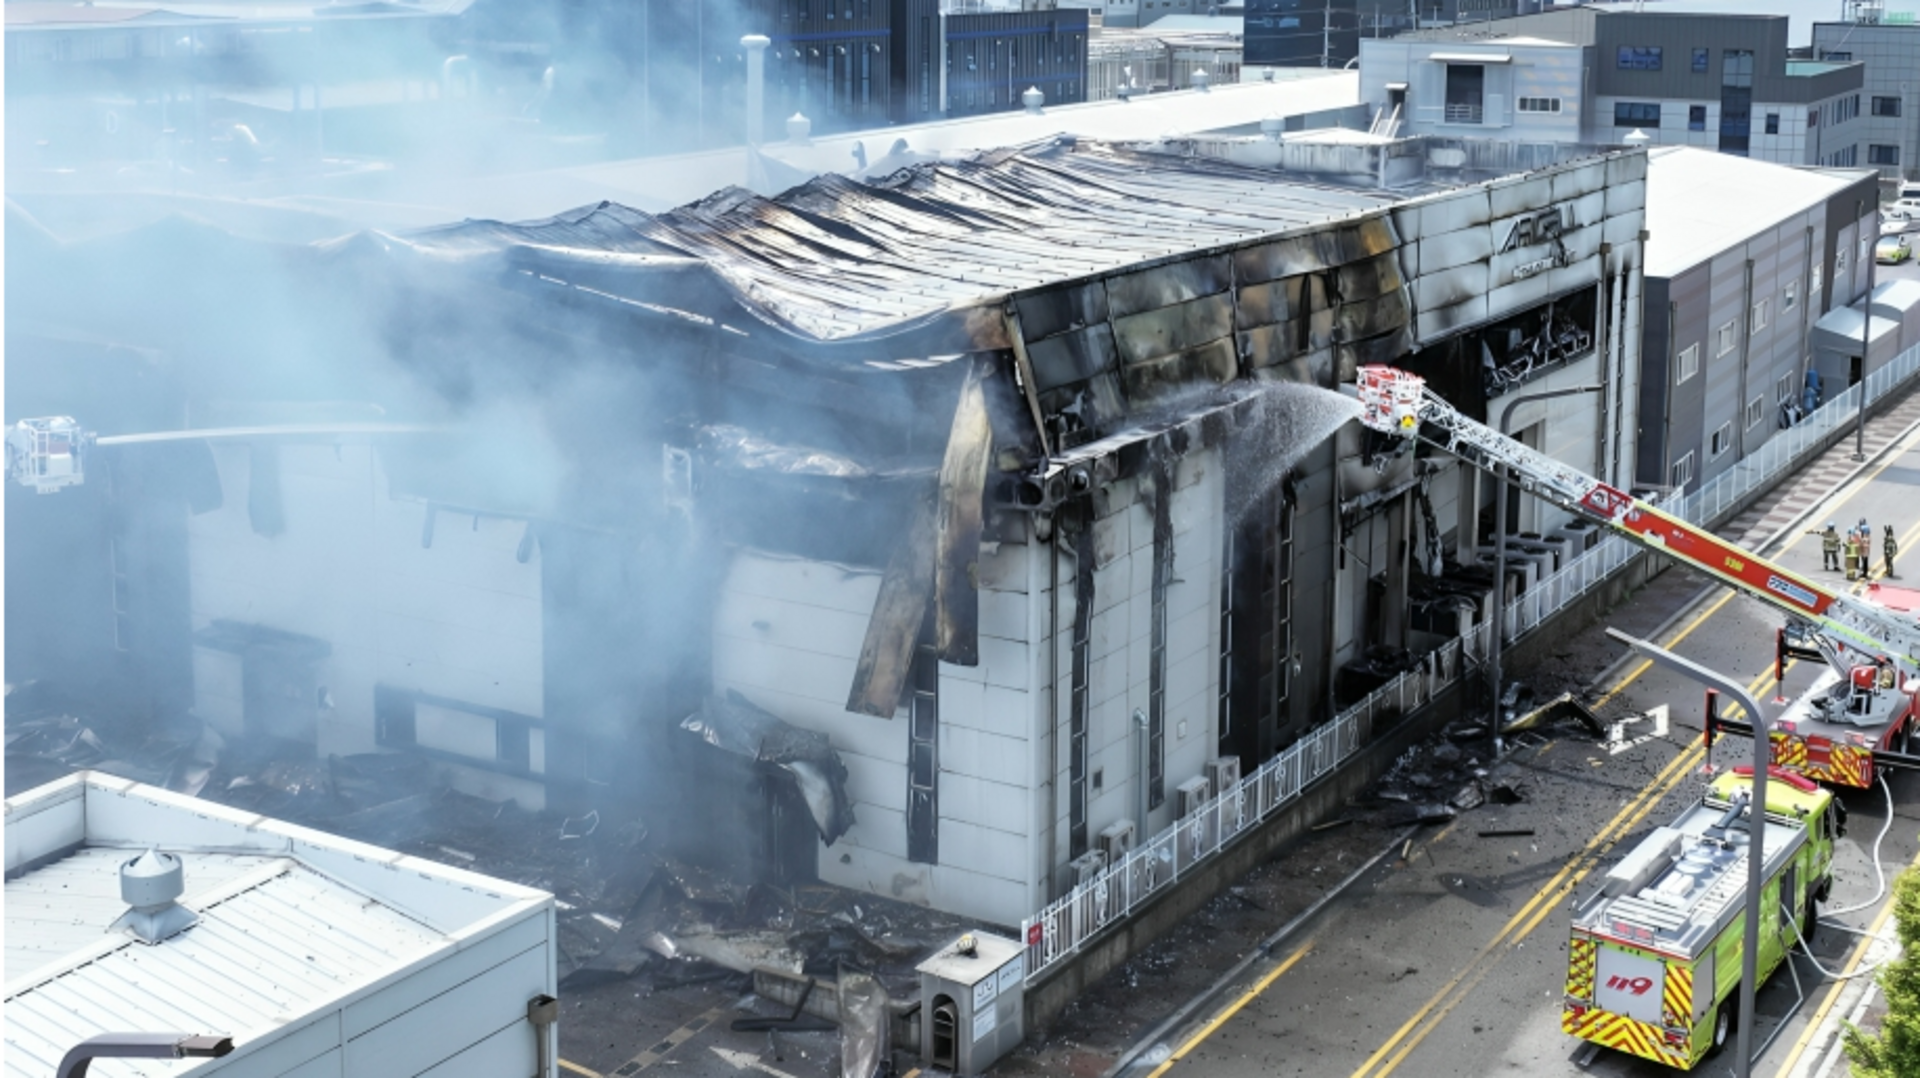 दक्षिण कोरिया: सियोल में बैटरी की फैक्ट्री में धमाके के साथ लगी आग, 20 की मौत